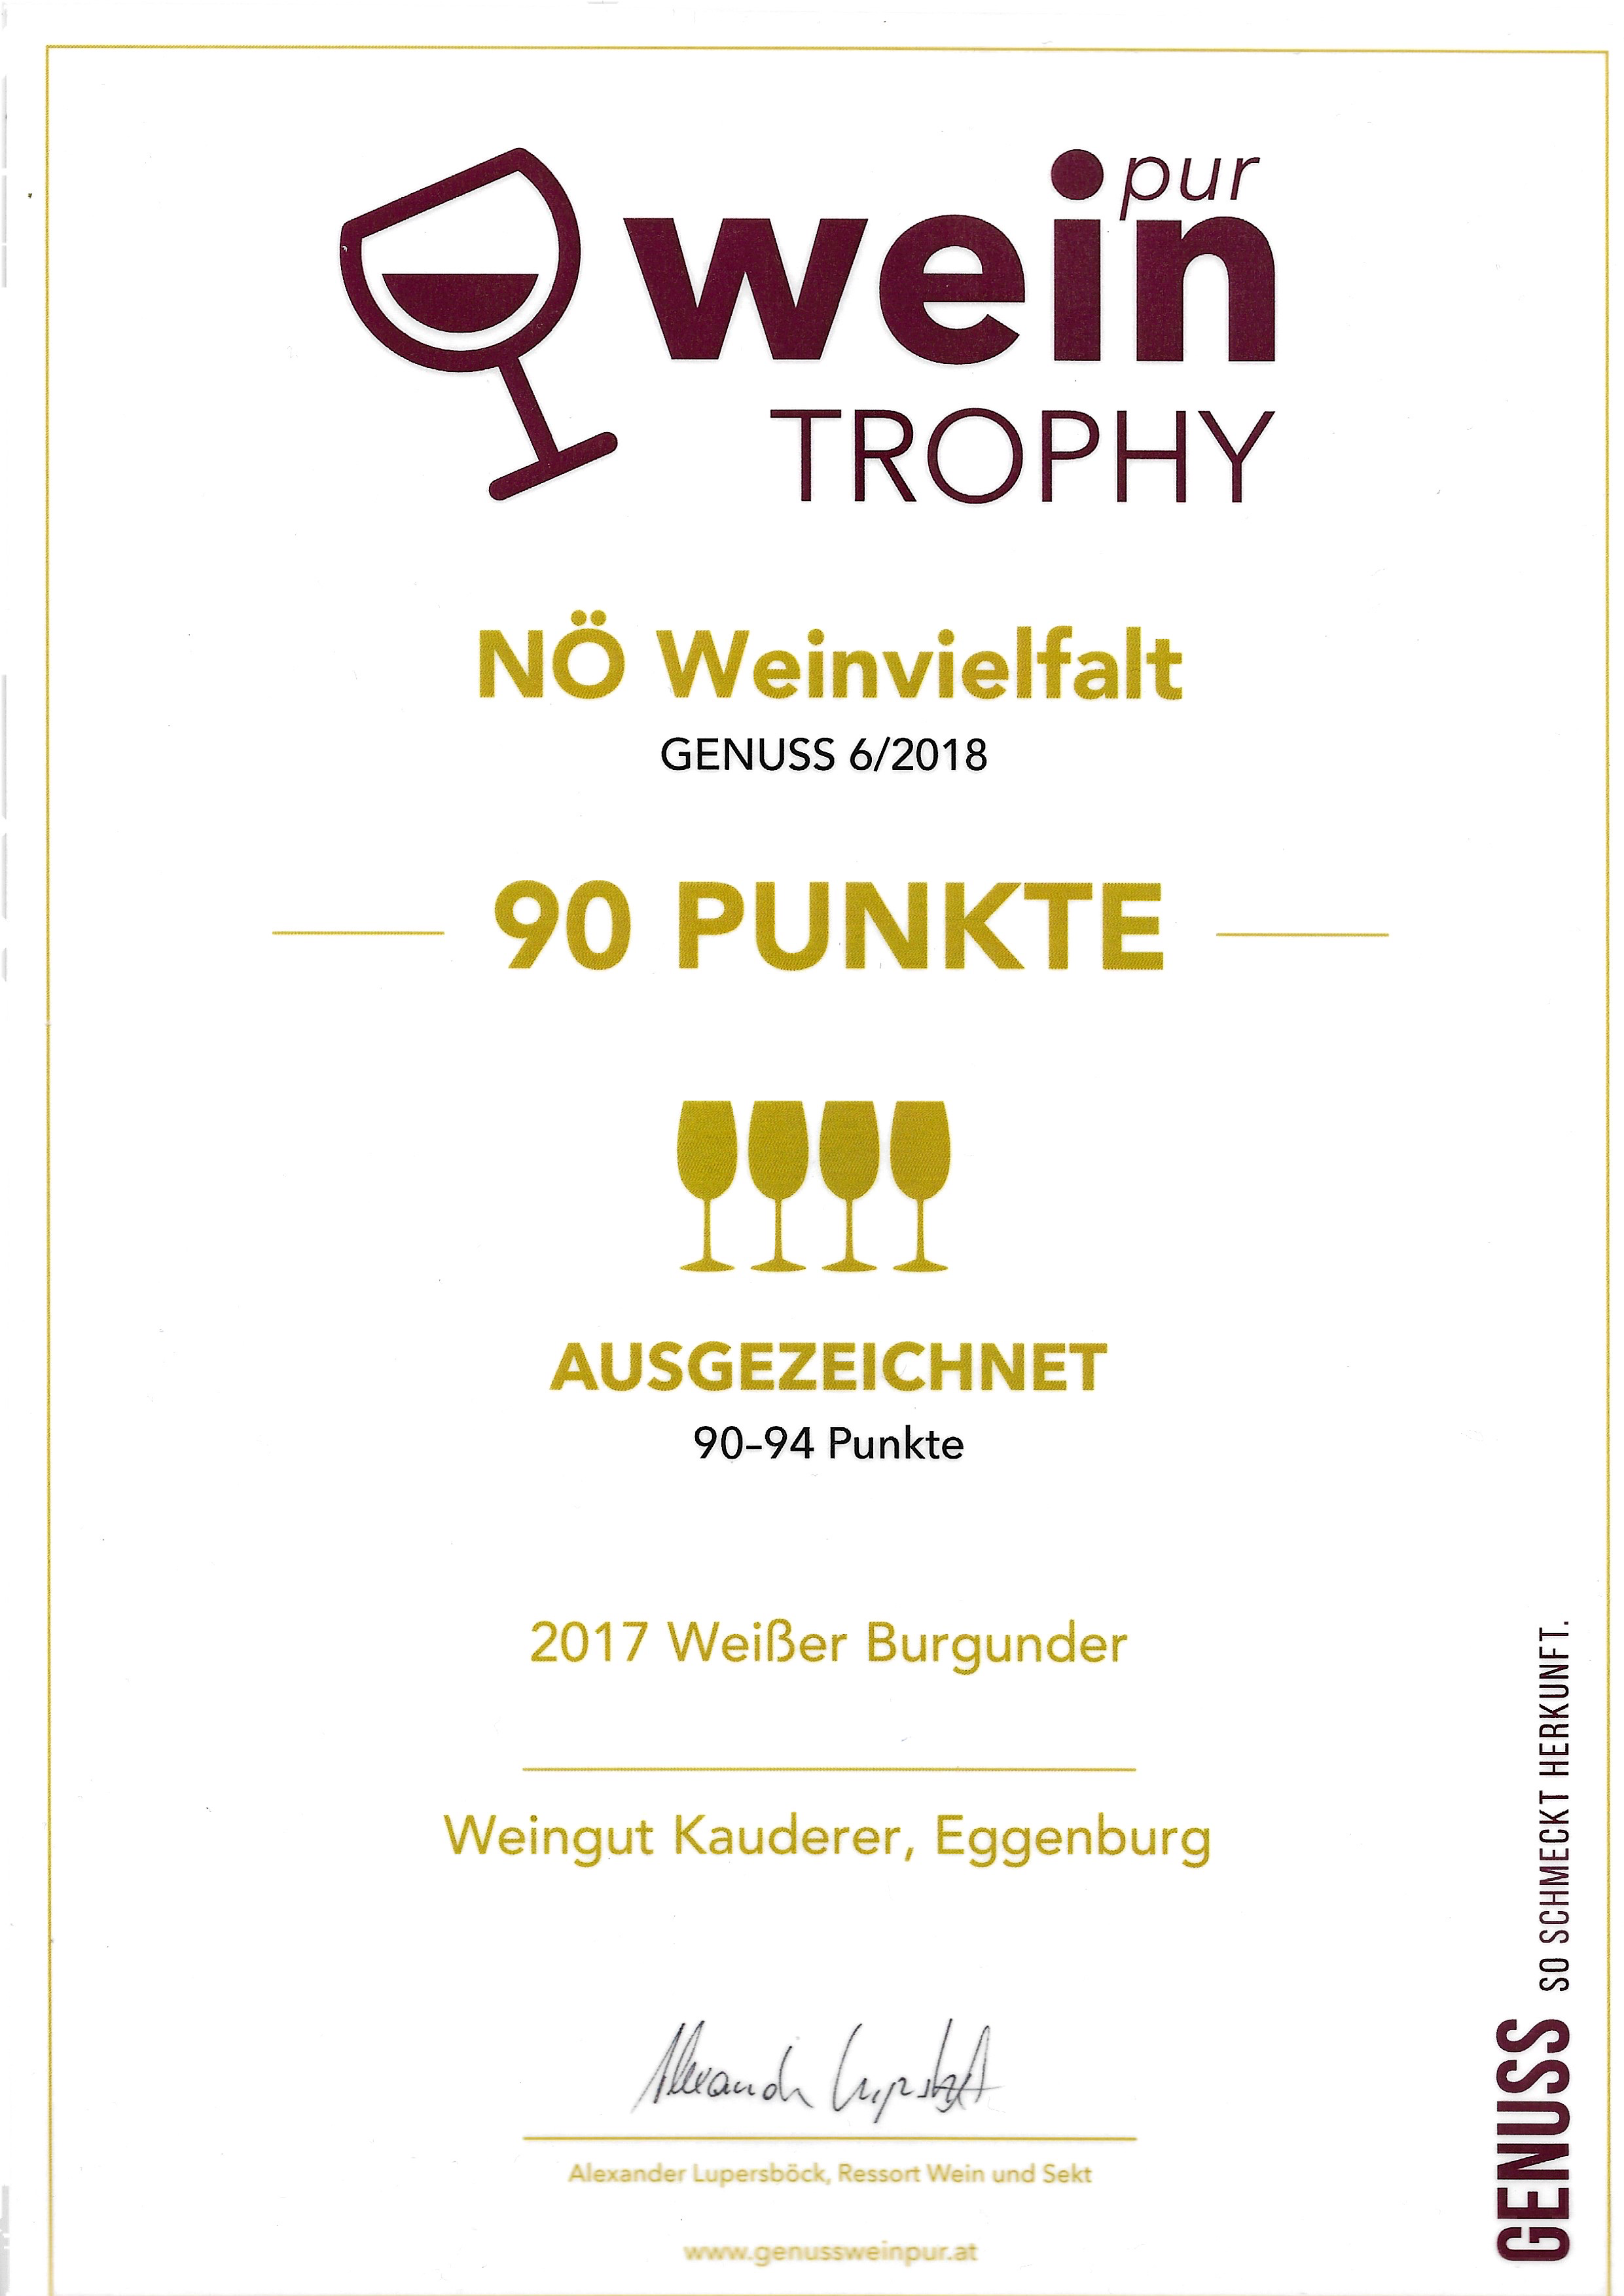 Wein pur trophy 2018